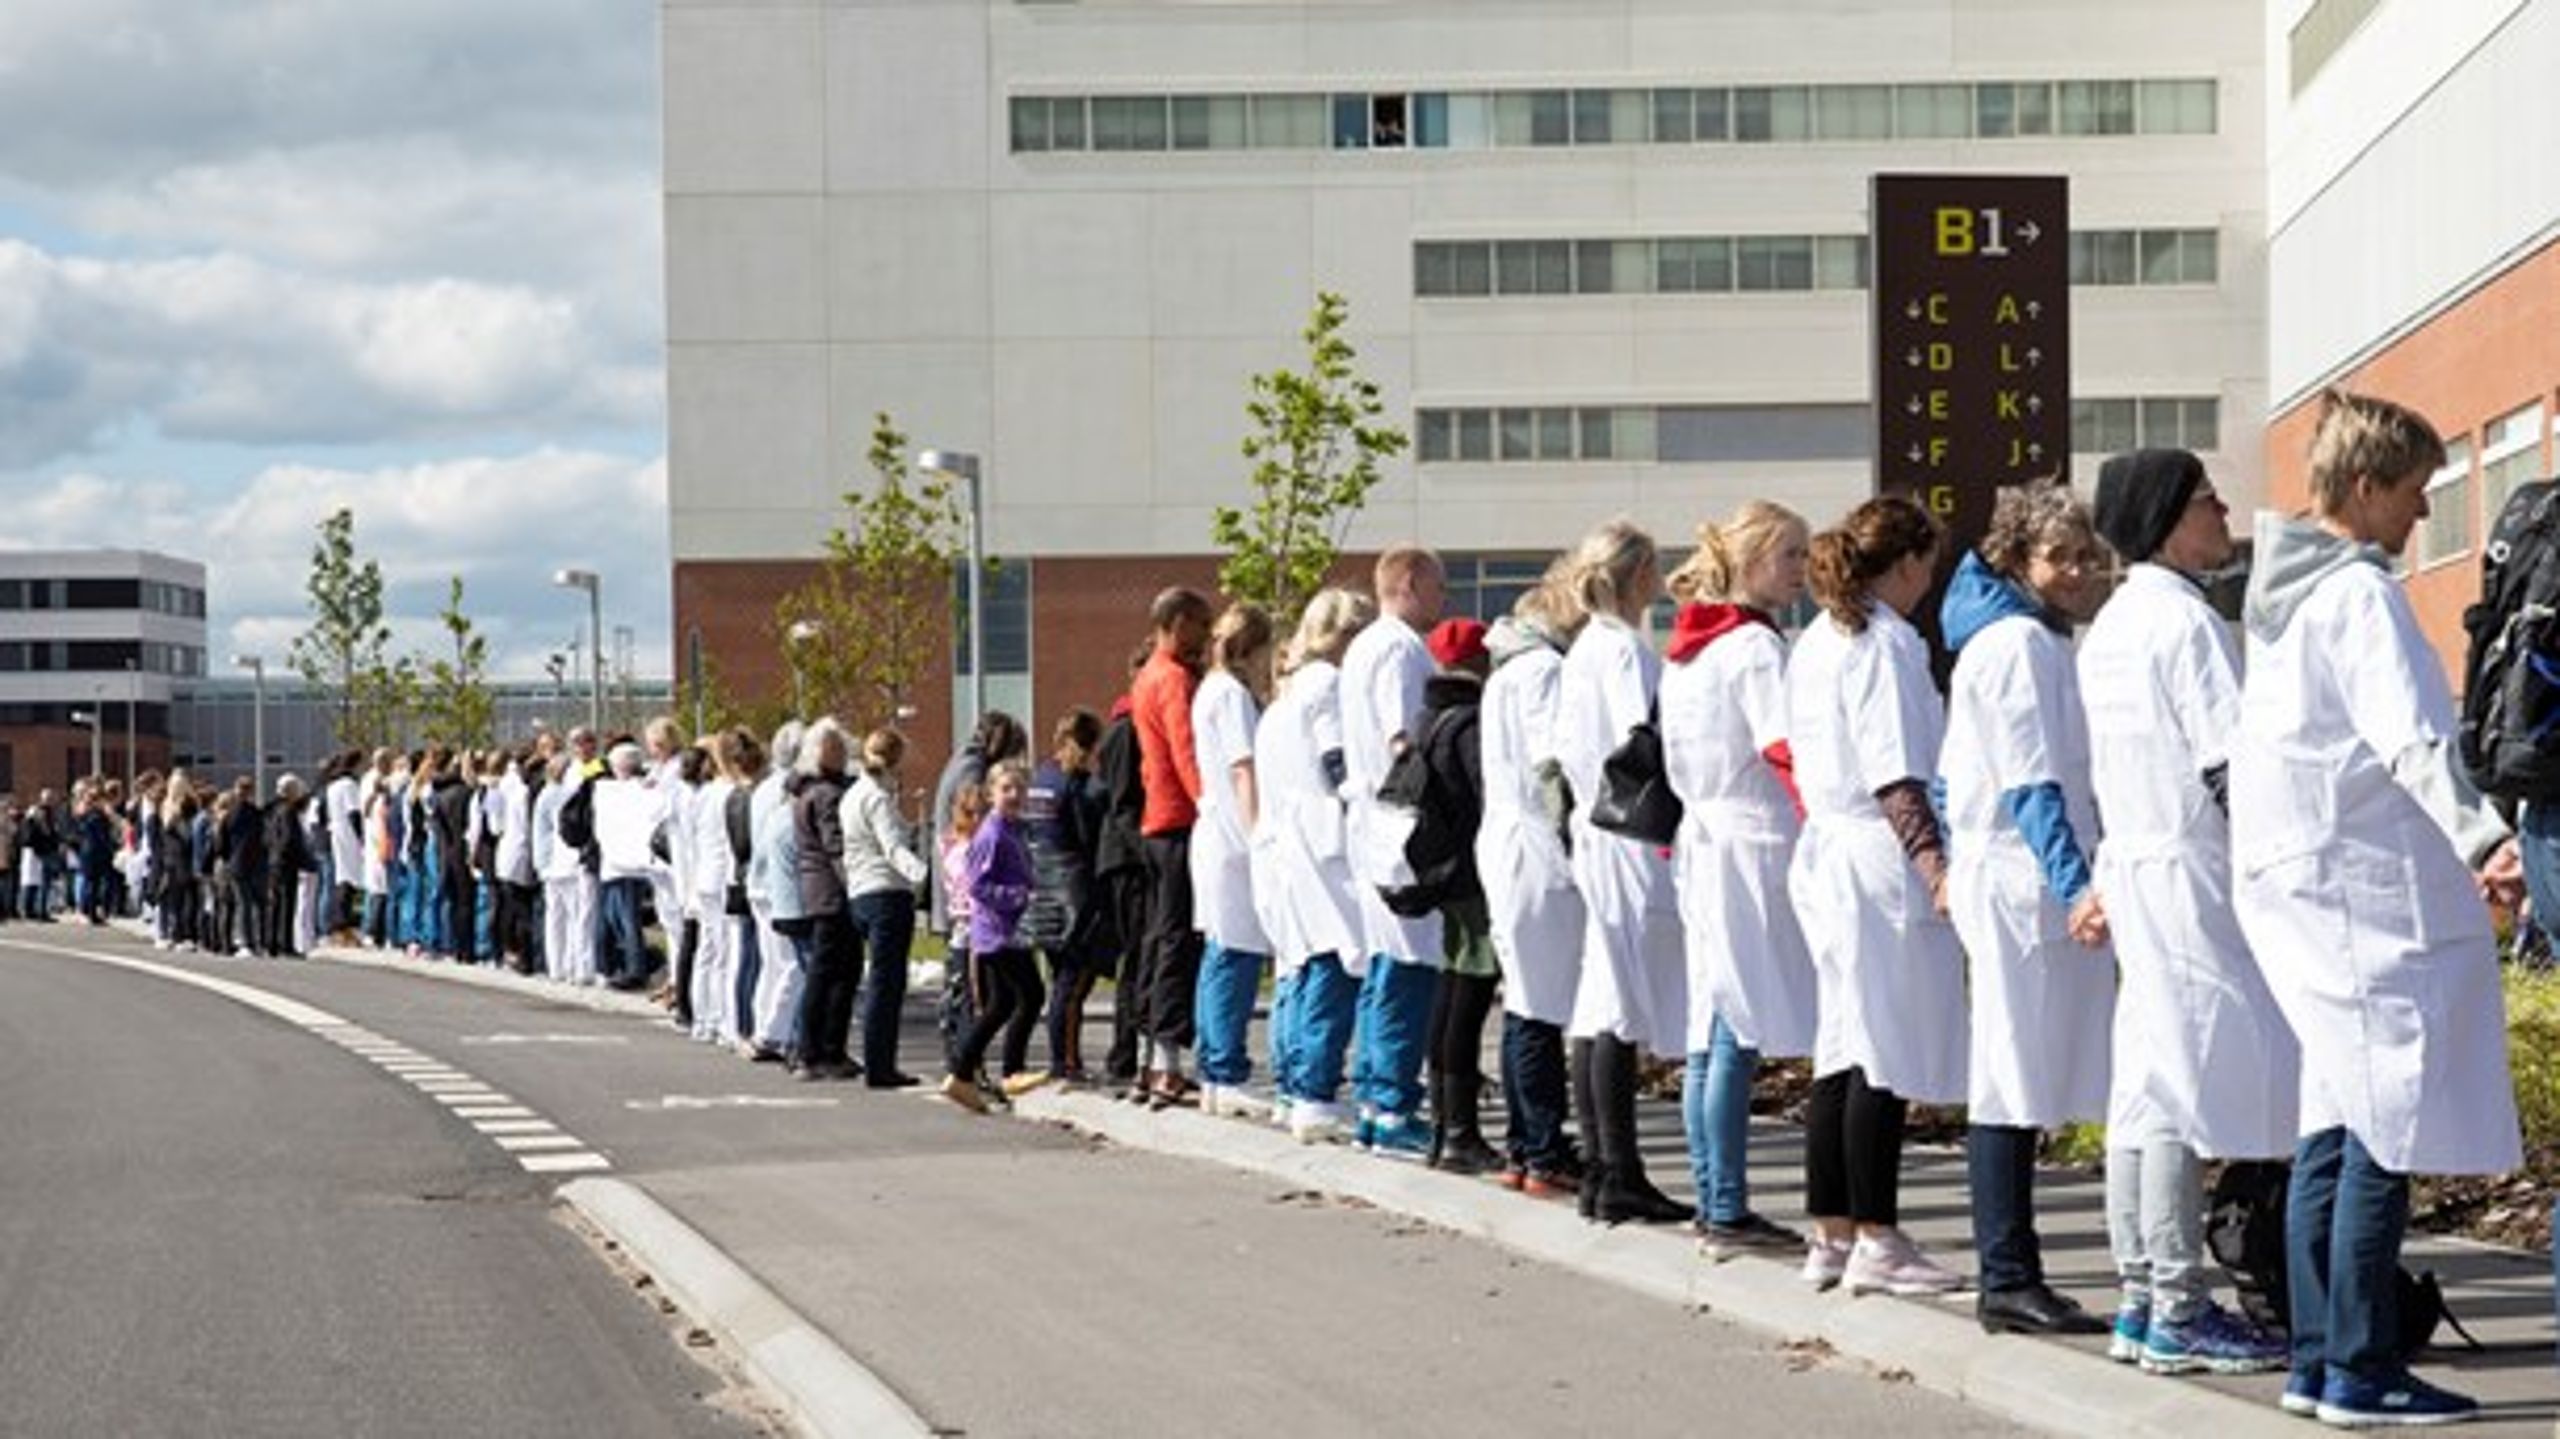 Medarbejdere på Aarhus Universitetshospital&nbsp;dannede i maj en menneskekæde rundt om hospitalet i Skejby, fordi de protesterede mod besparelser.